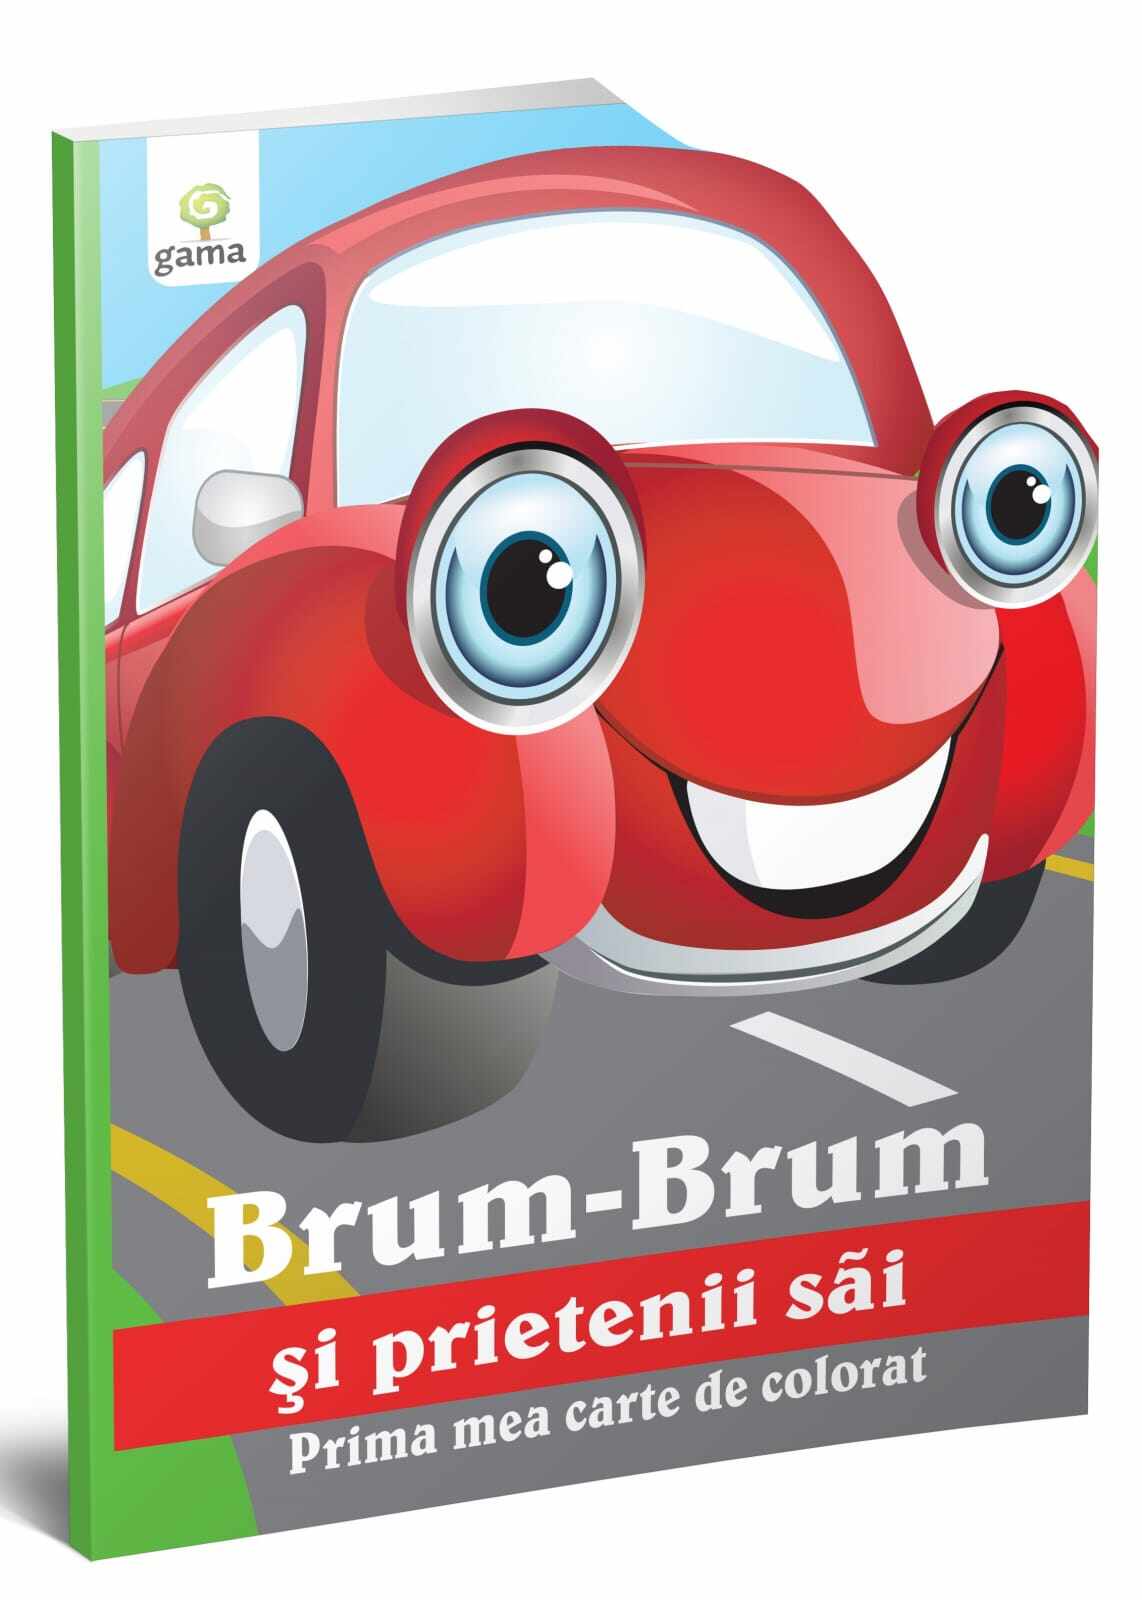 Brum-Brum si prietenii sai, Editura Gama, 2-3 ani +